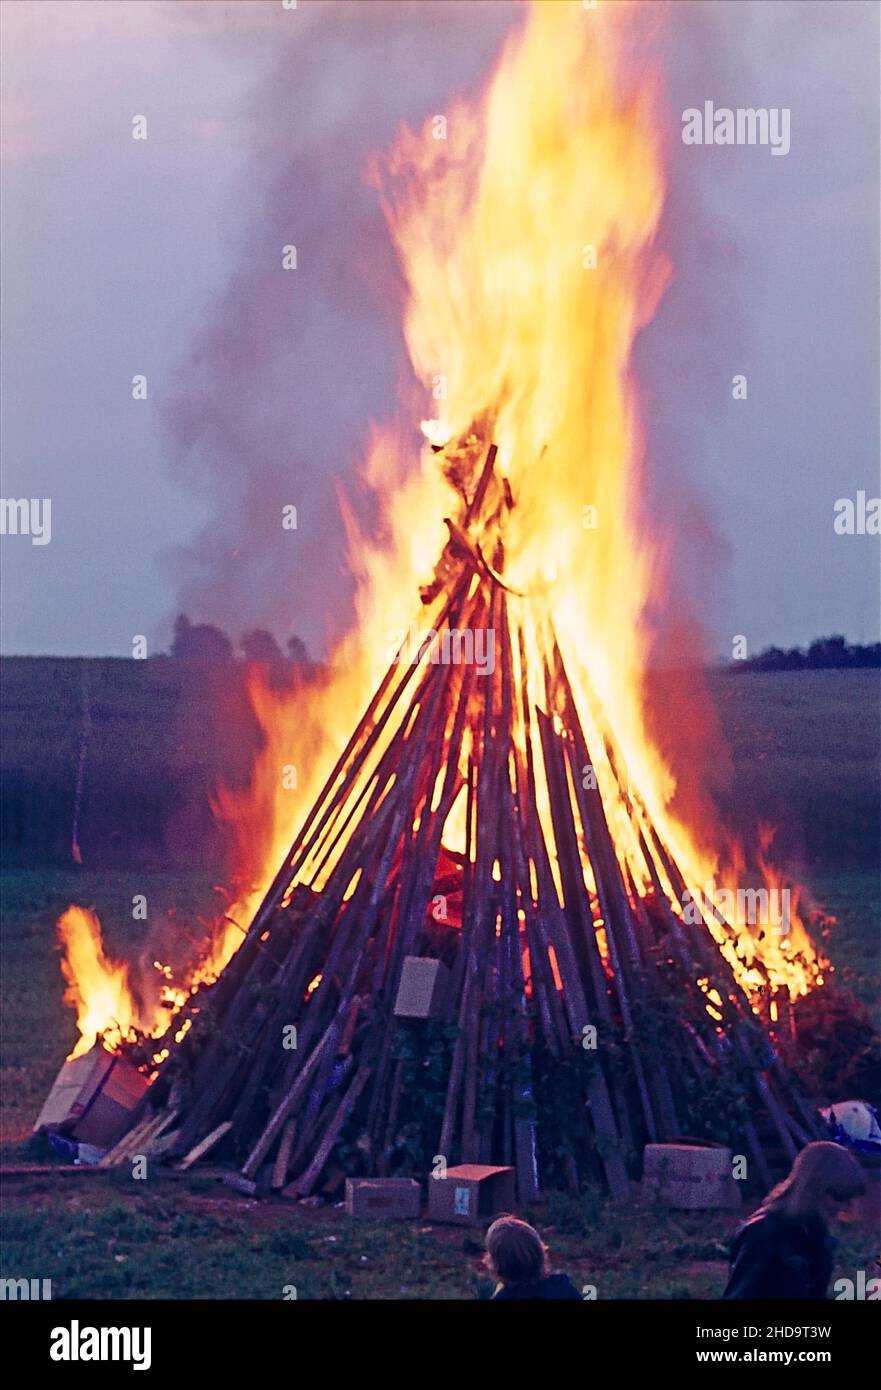 Bonfire at St. Hans Festival in Kokkedal near Copenhagen Denmark. Stock Photo